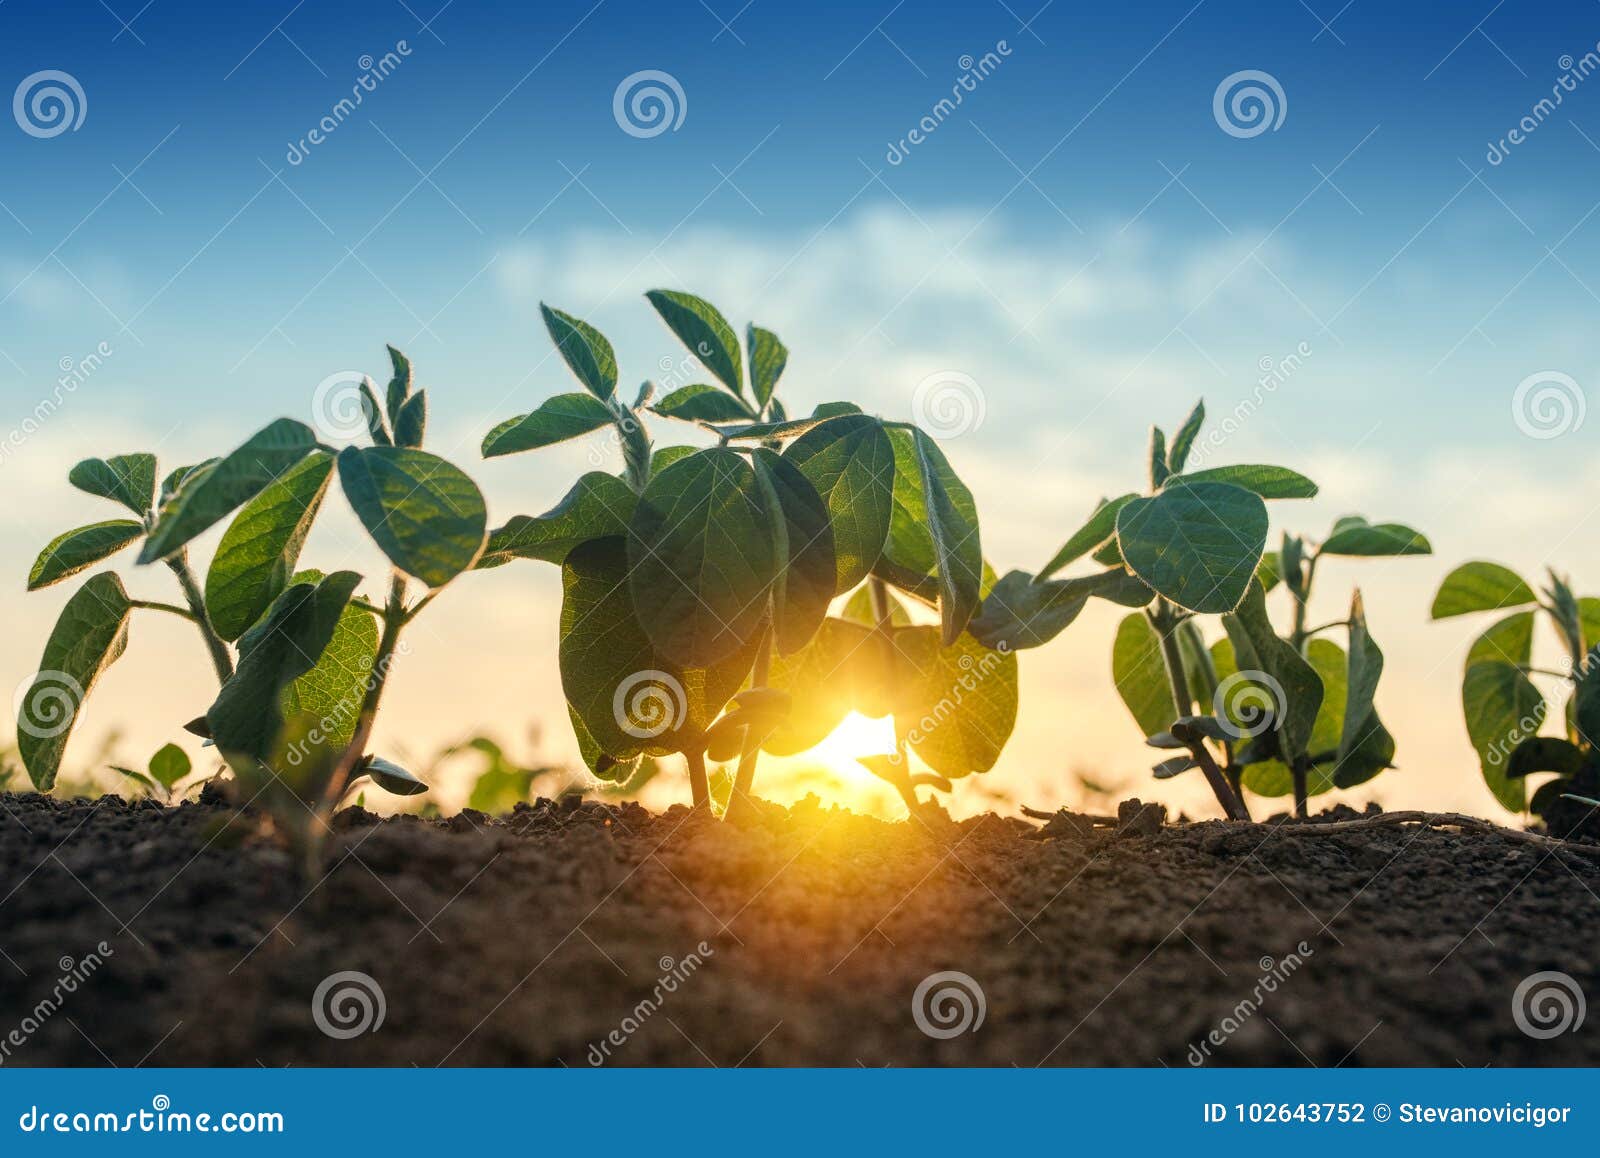 sunrise in soybean field